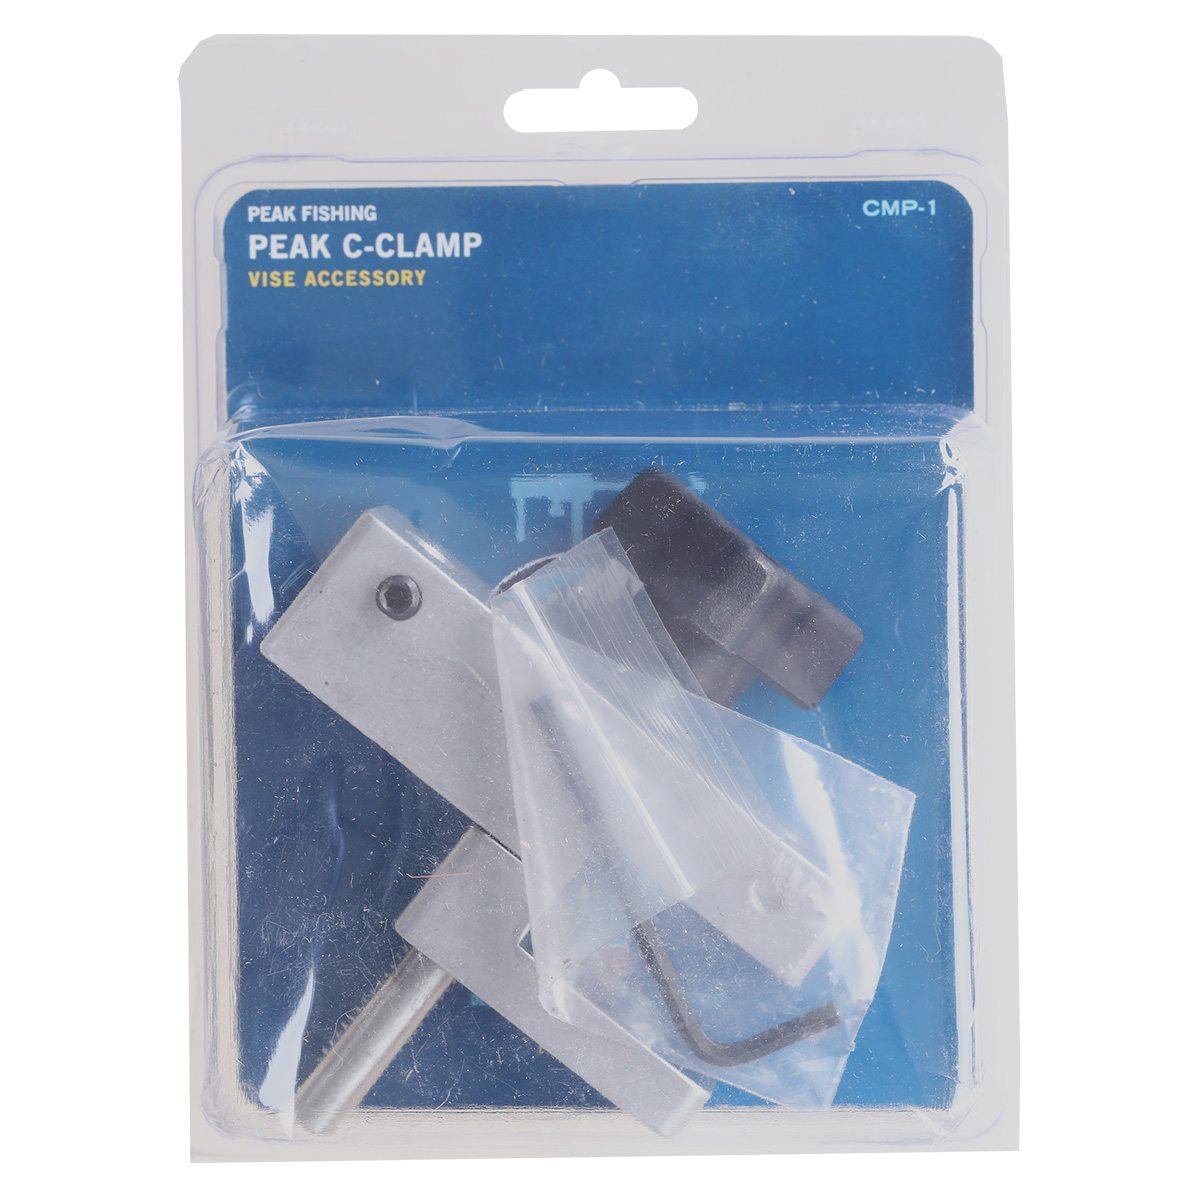 Peak C-Clamp